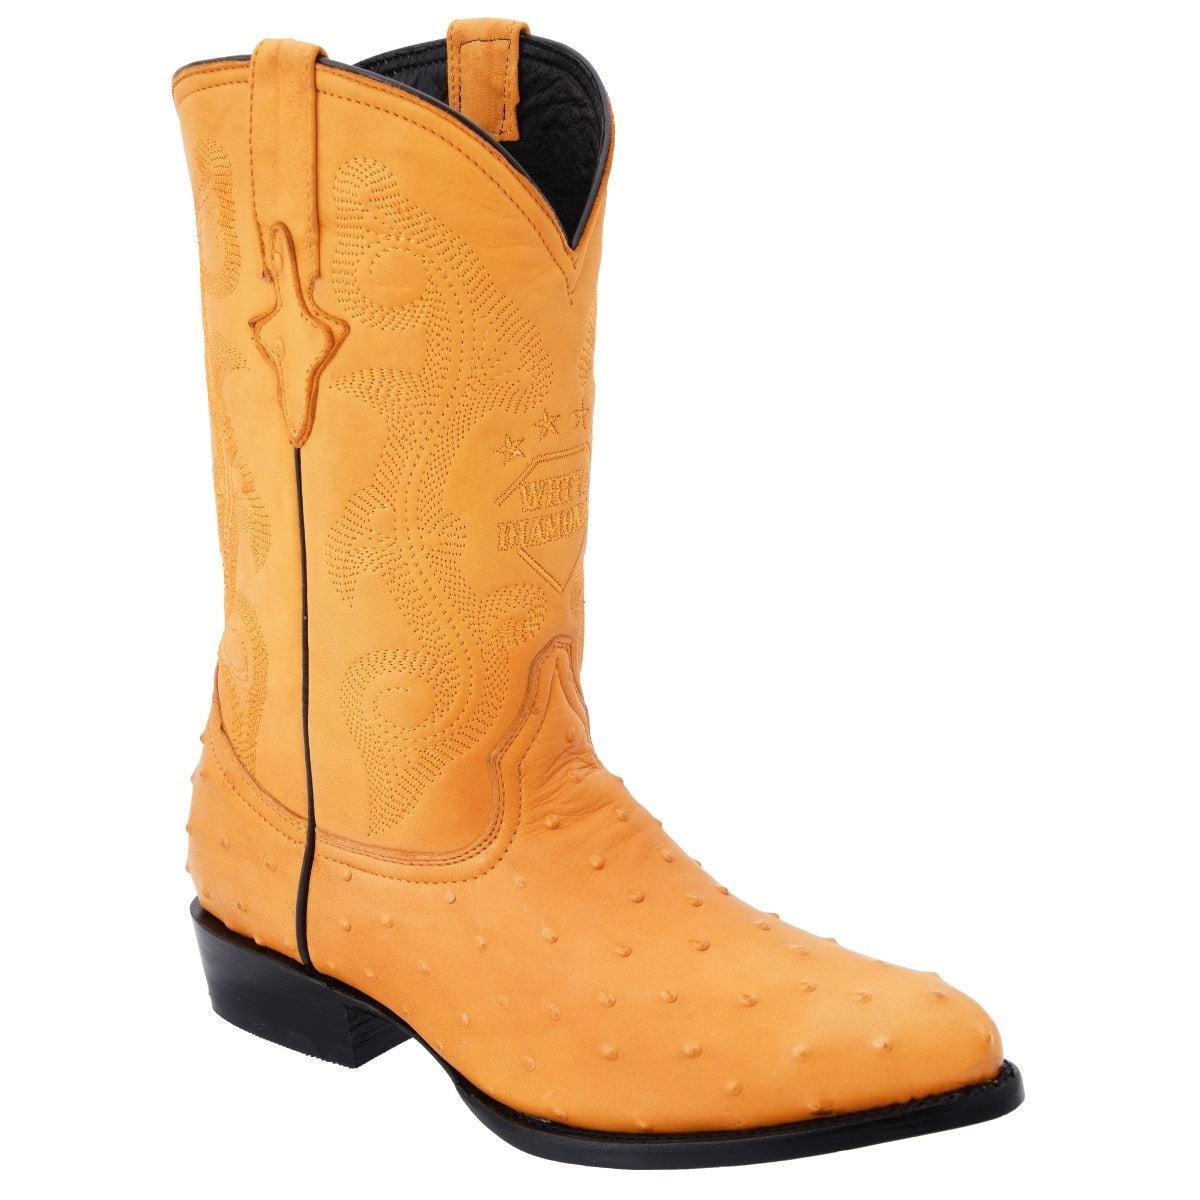 Botas Vaqueras TM-WD0278 - Western Boots